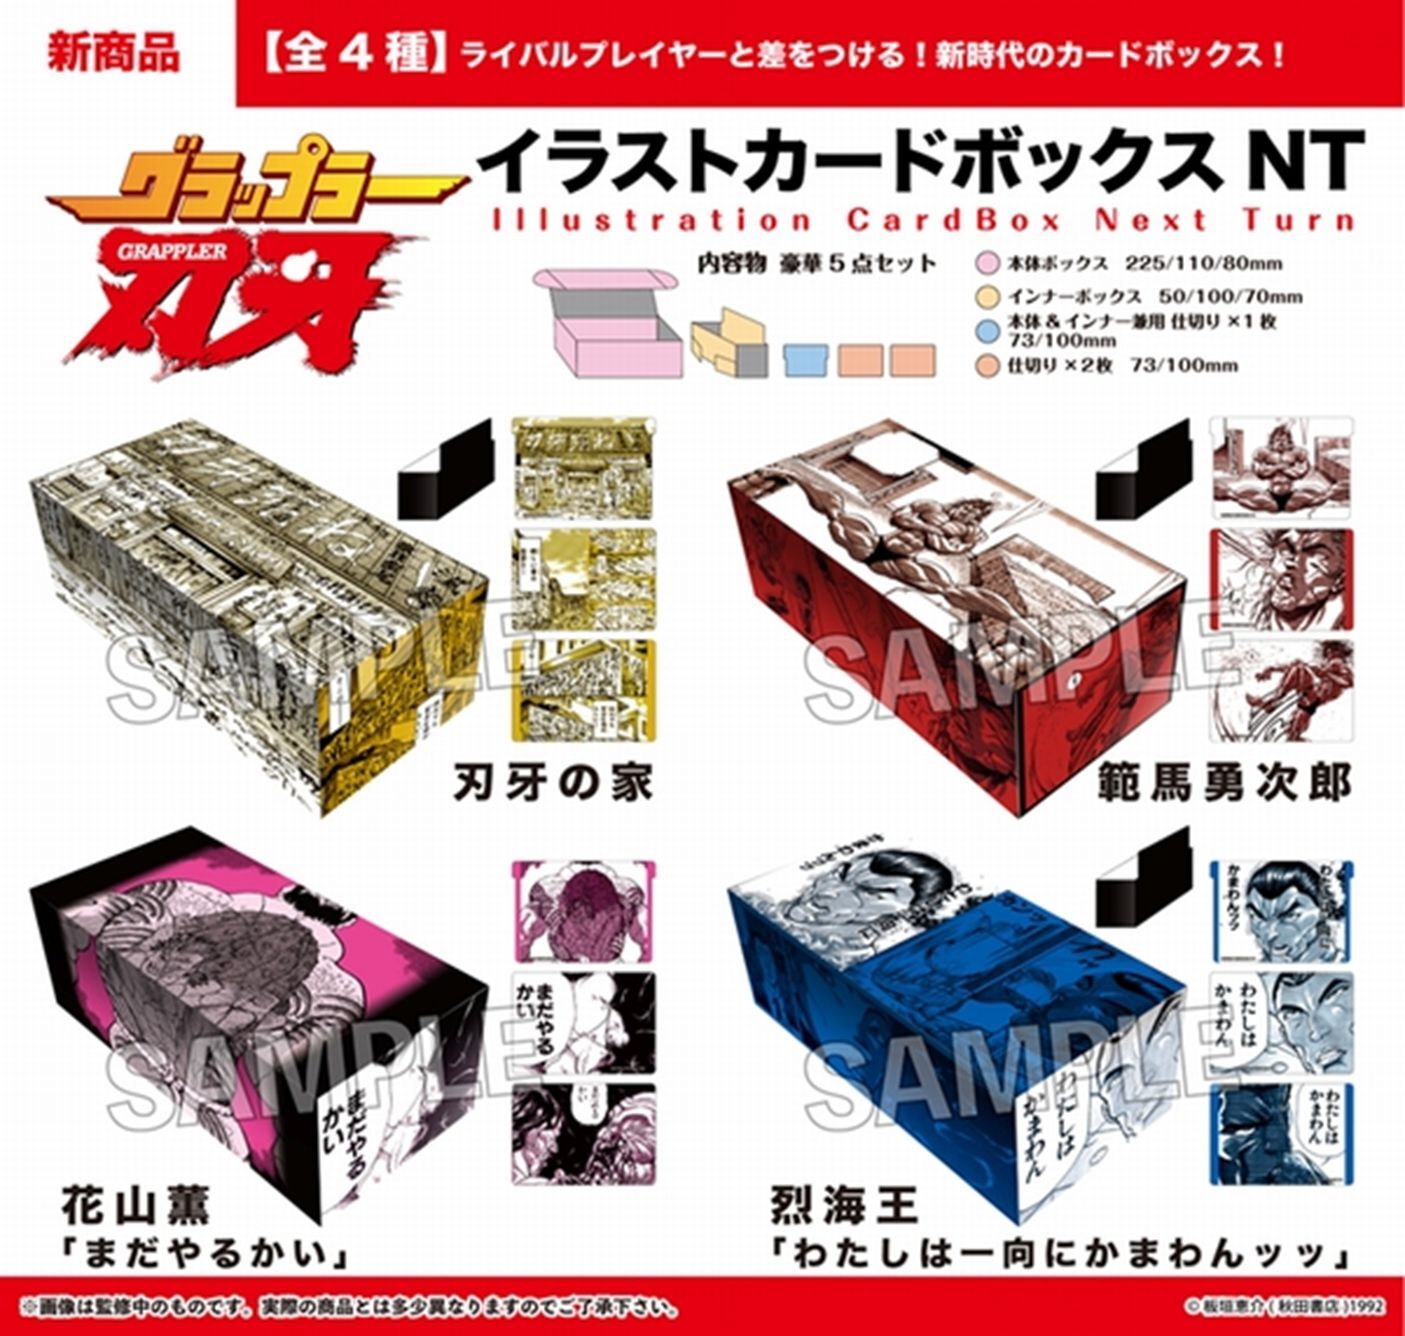 サプライ 【予約商品】PROOF 「刃牙」シリーズ イラストカードボックス